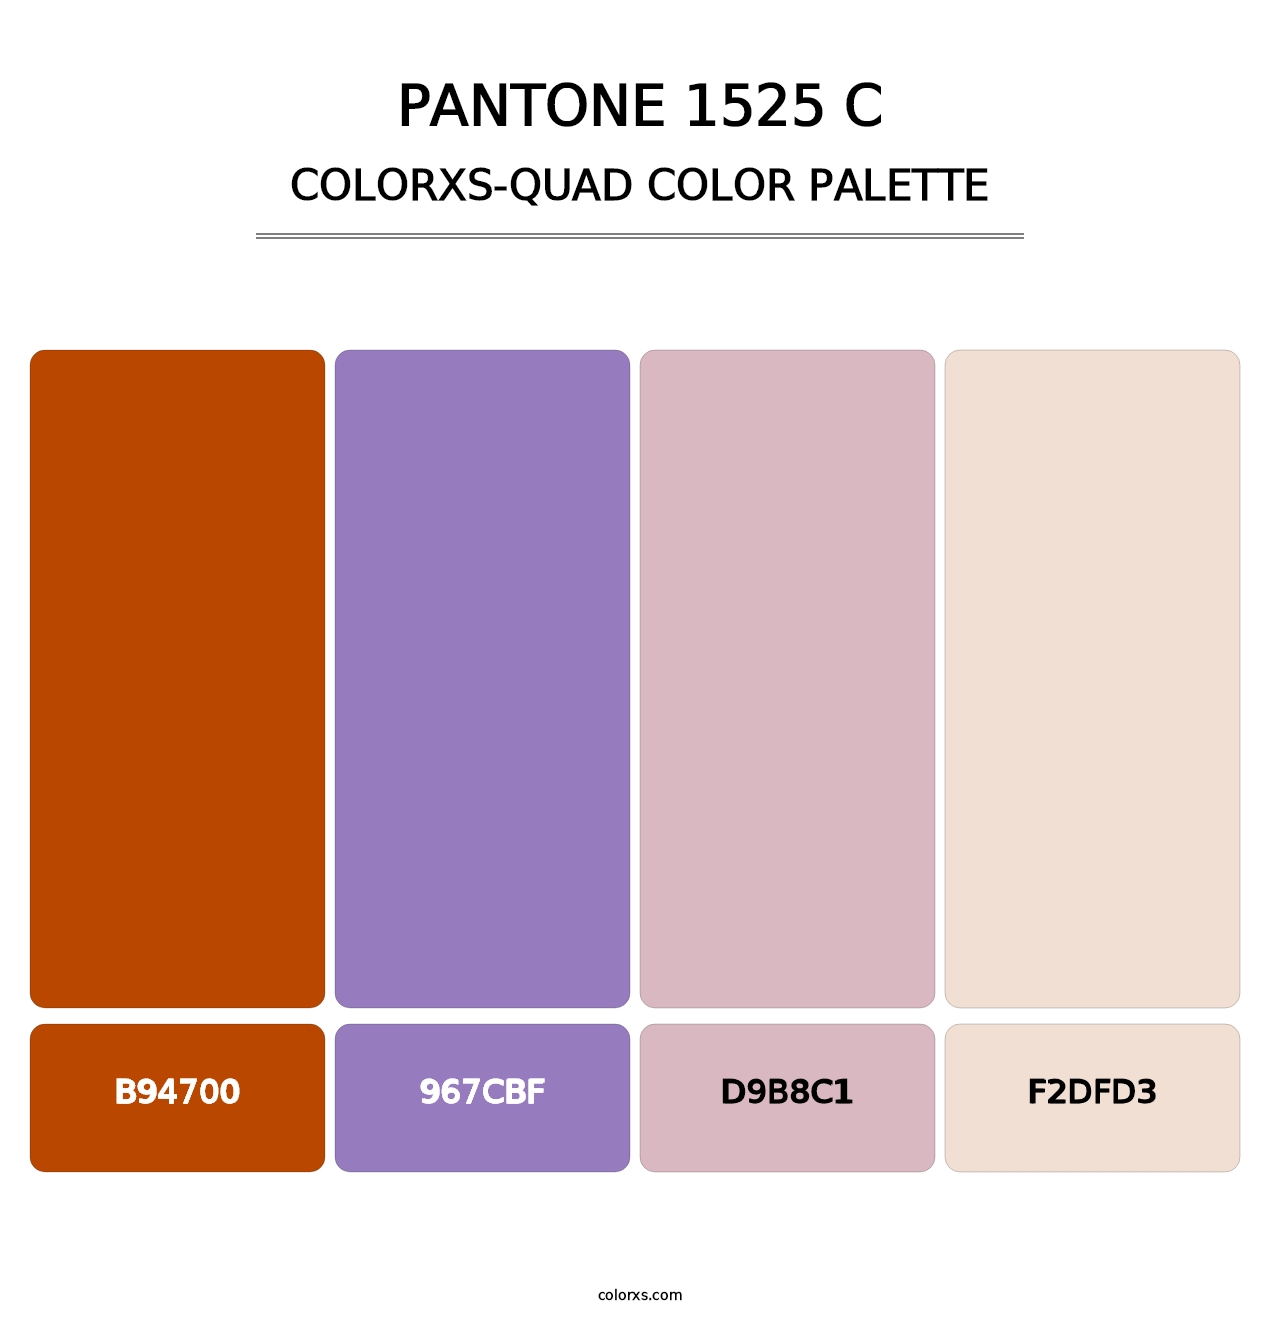 PANTONE 1525 C - Colorxs Quad Palette